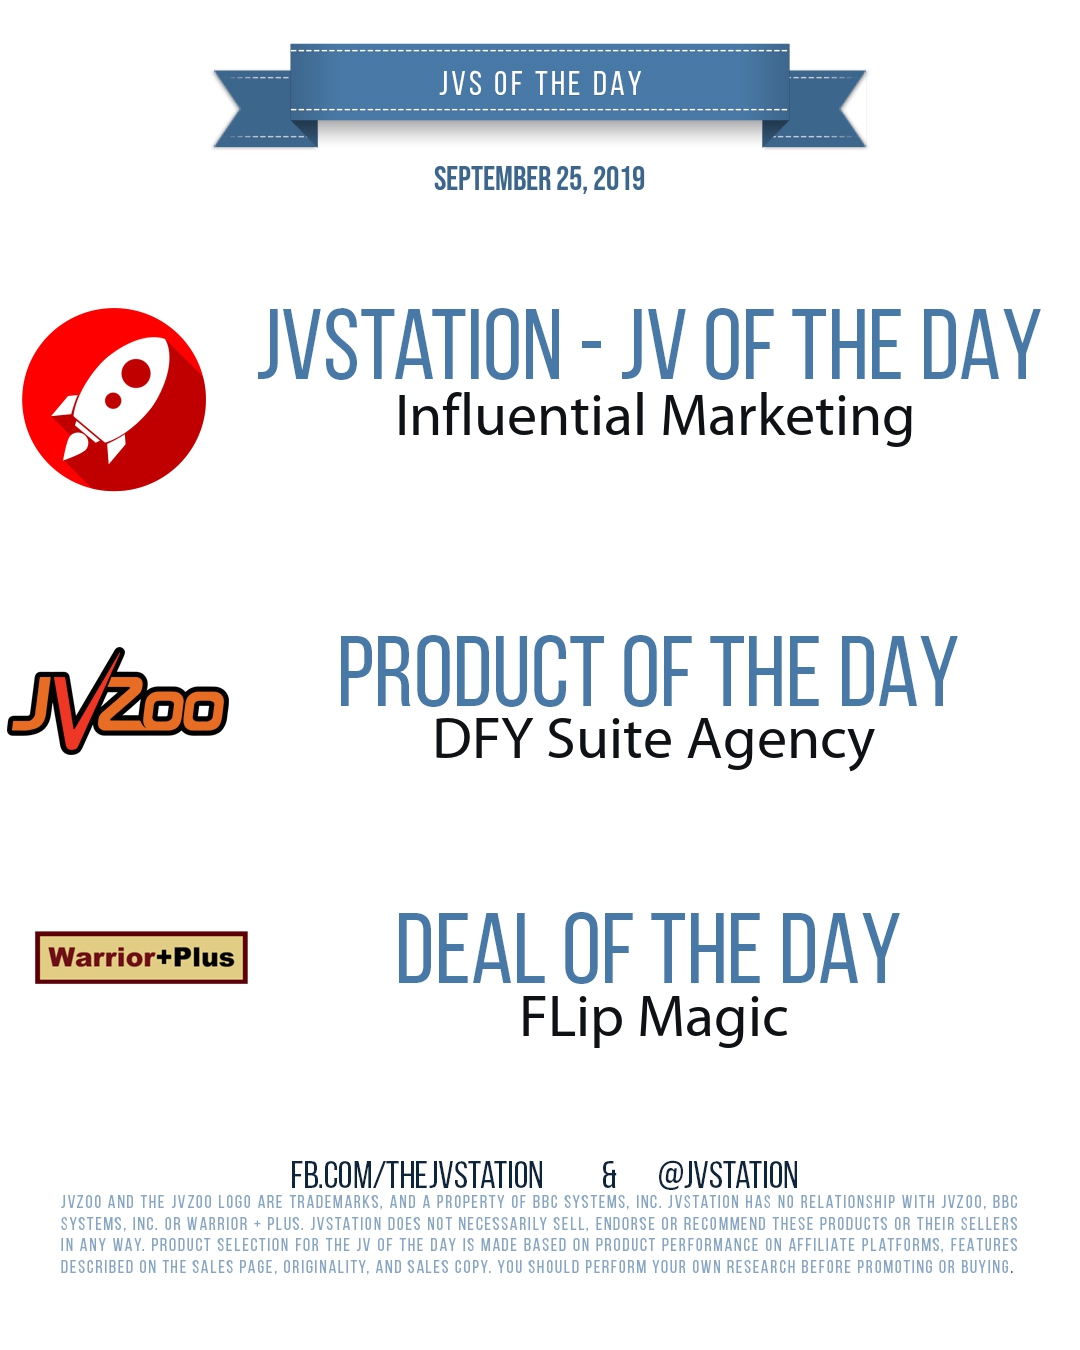 JVs of the day - September 25, 2019